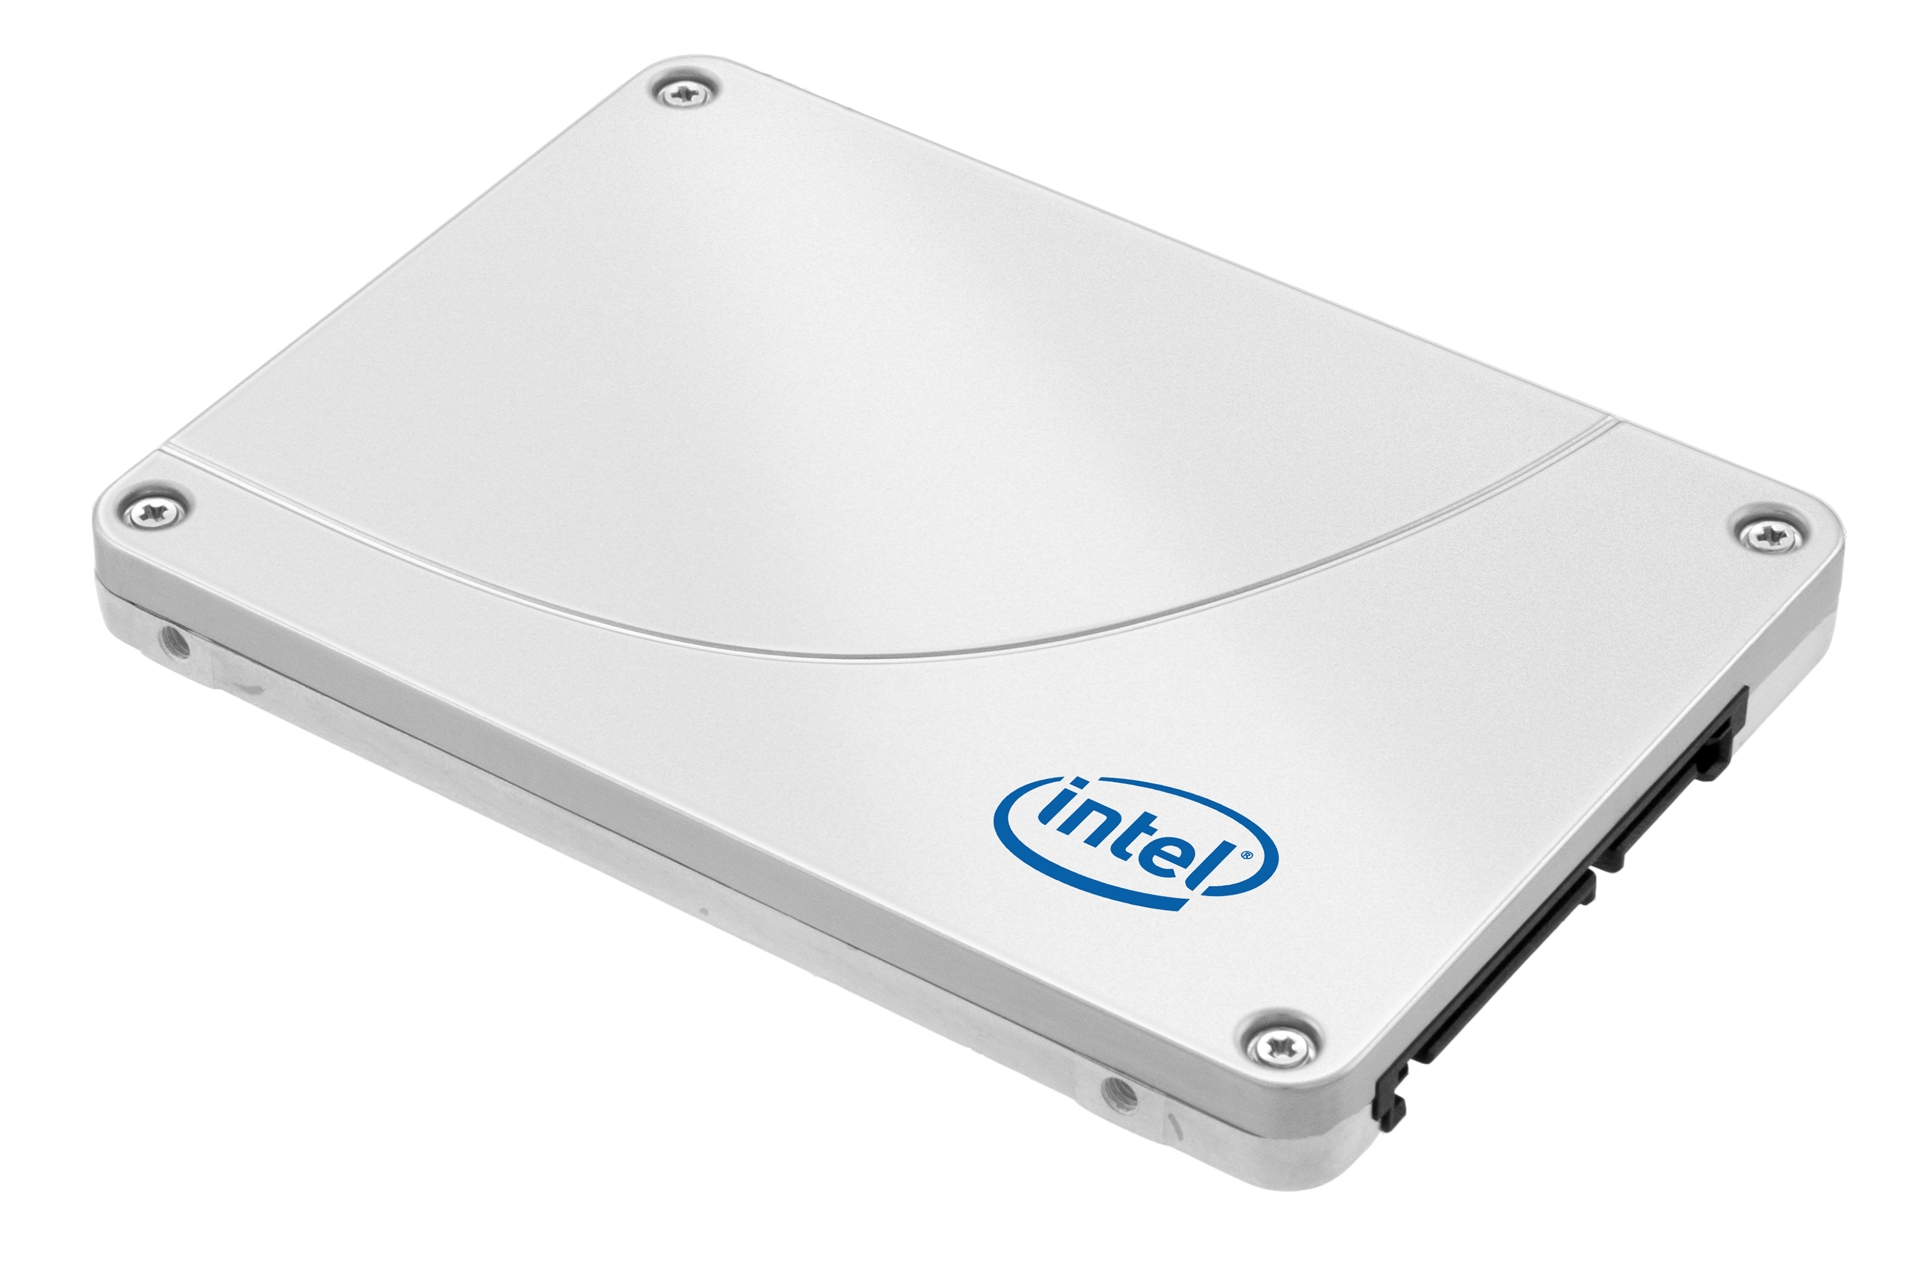 Immagine pubblicata in relazione al seguente contenuto: Intel annuncia la commercializzazione degli SSD 335 da 240GB | Nome immagine: news18345_intel-SSD-335-Series_1.jpg